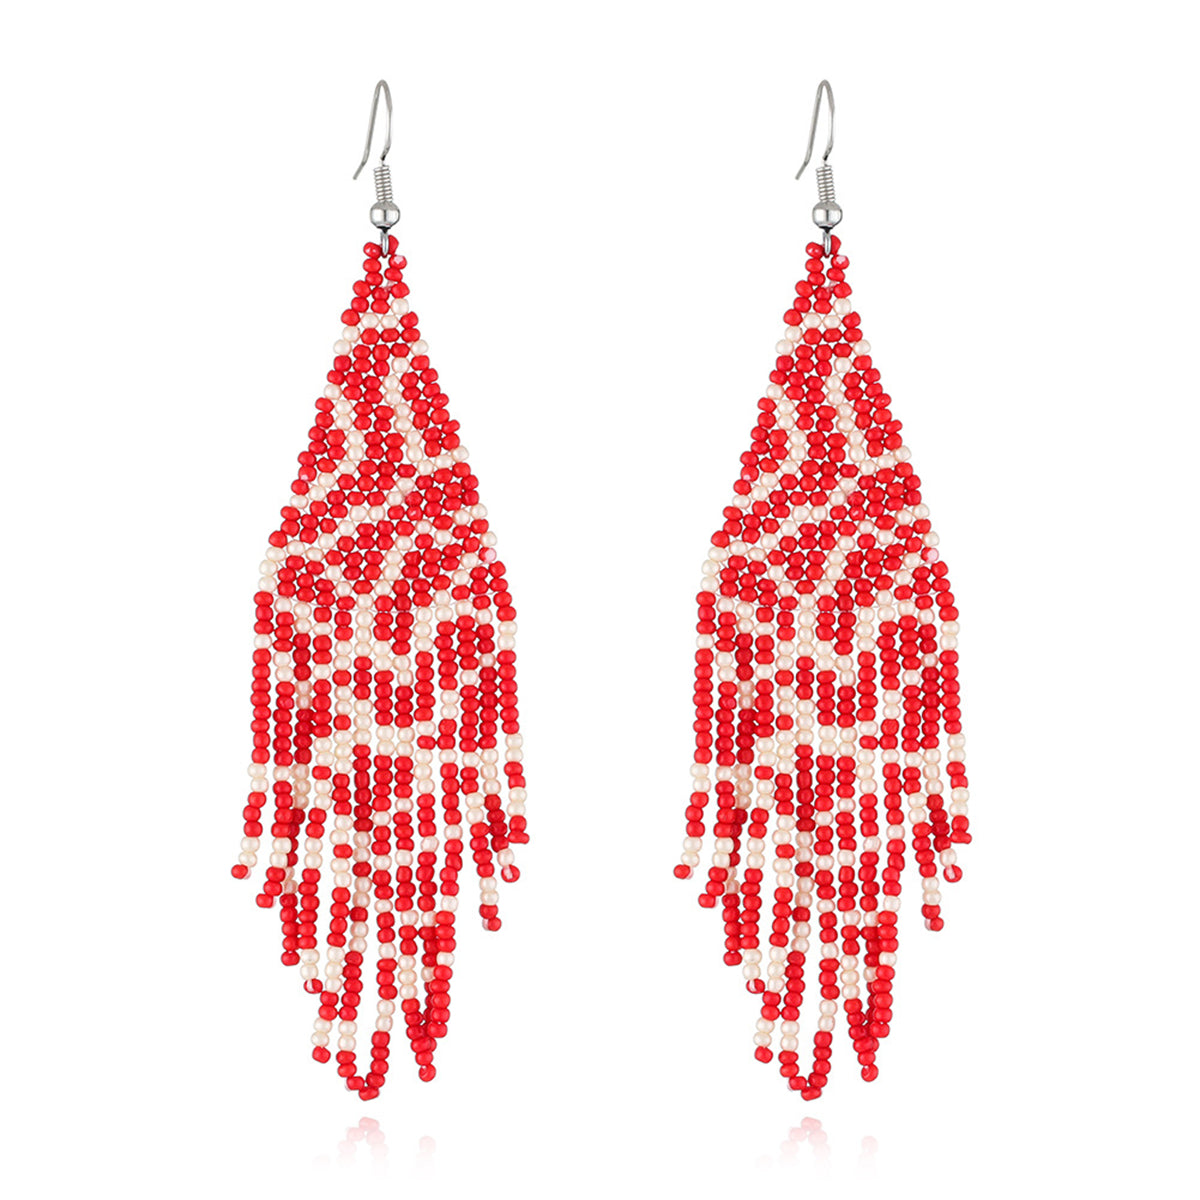 Red Howlite & Silver-Plated Bead Tassel Drop Earrings